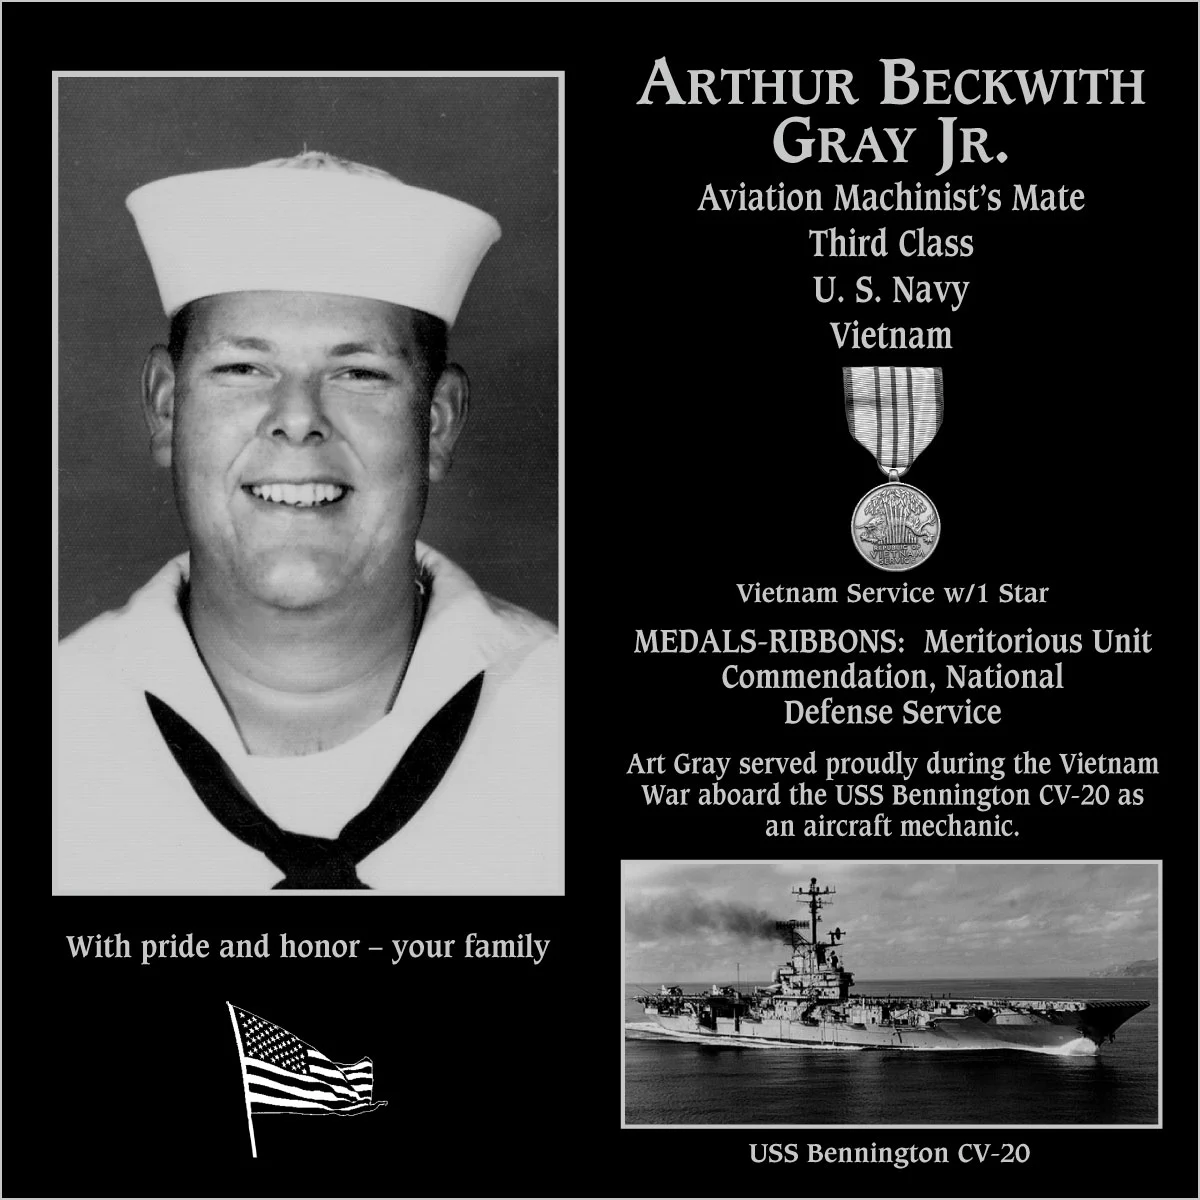 Arthur Beckwith Gray, jr